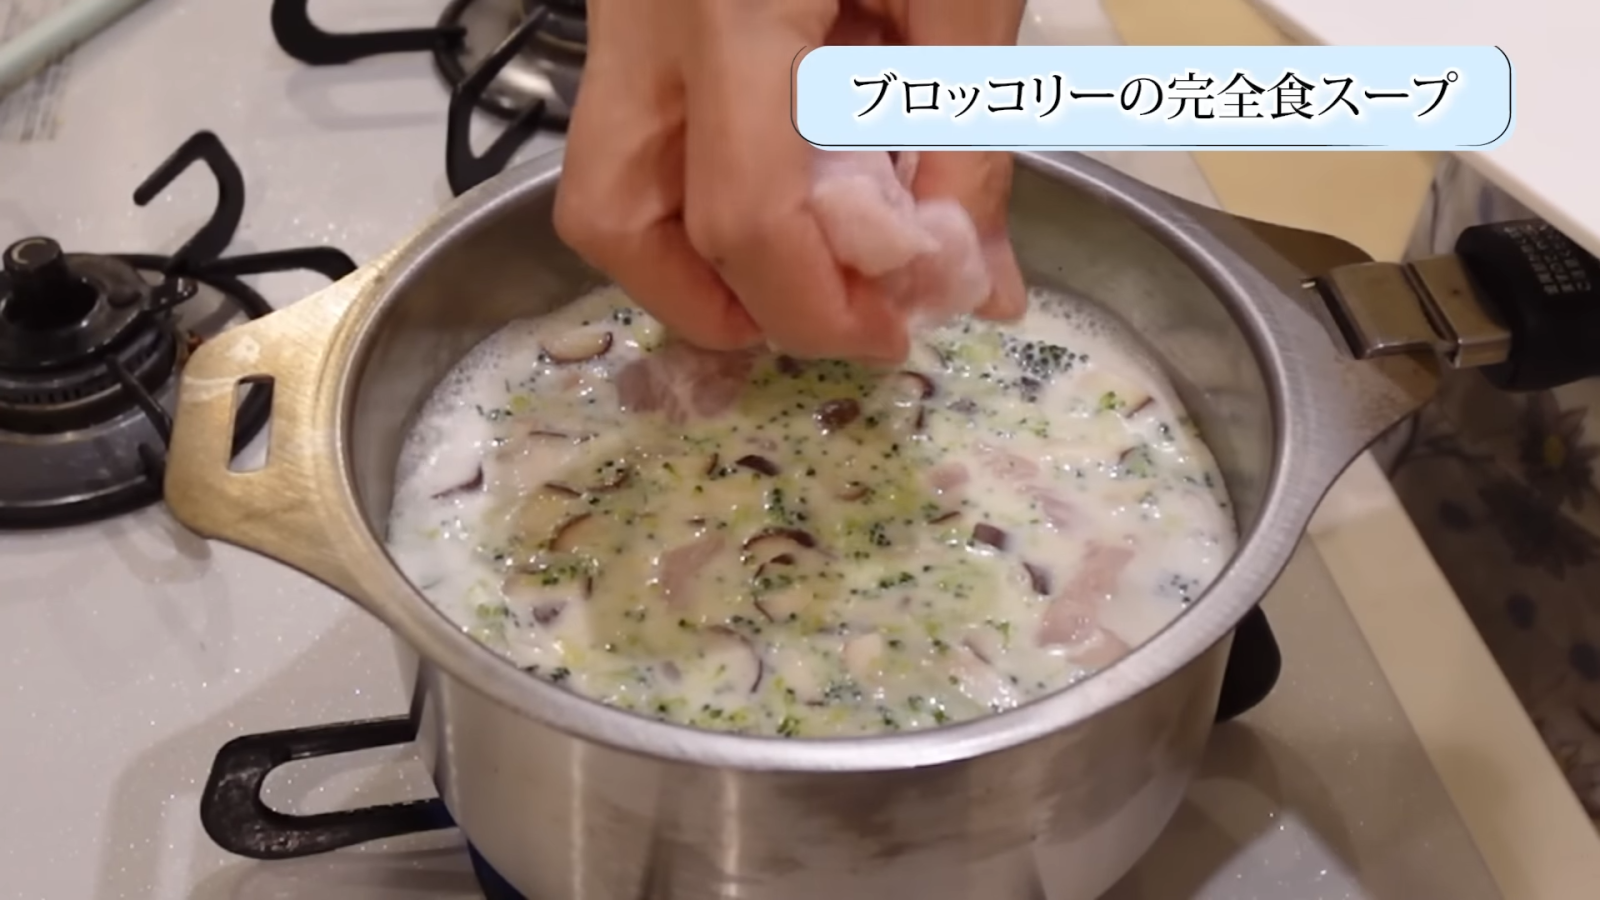 スープを作る鍋